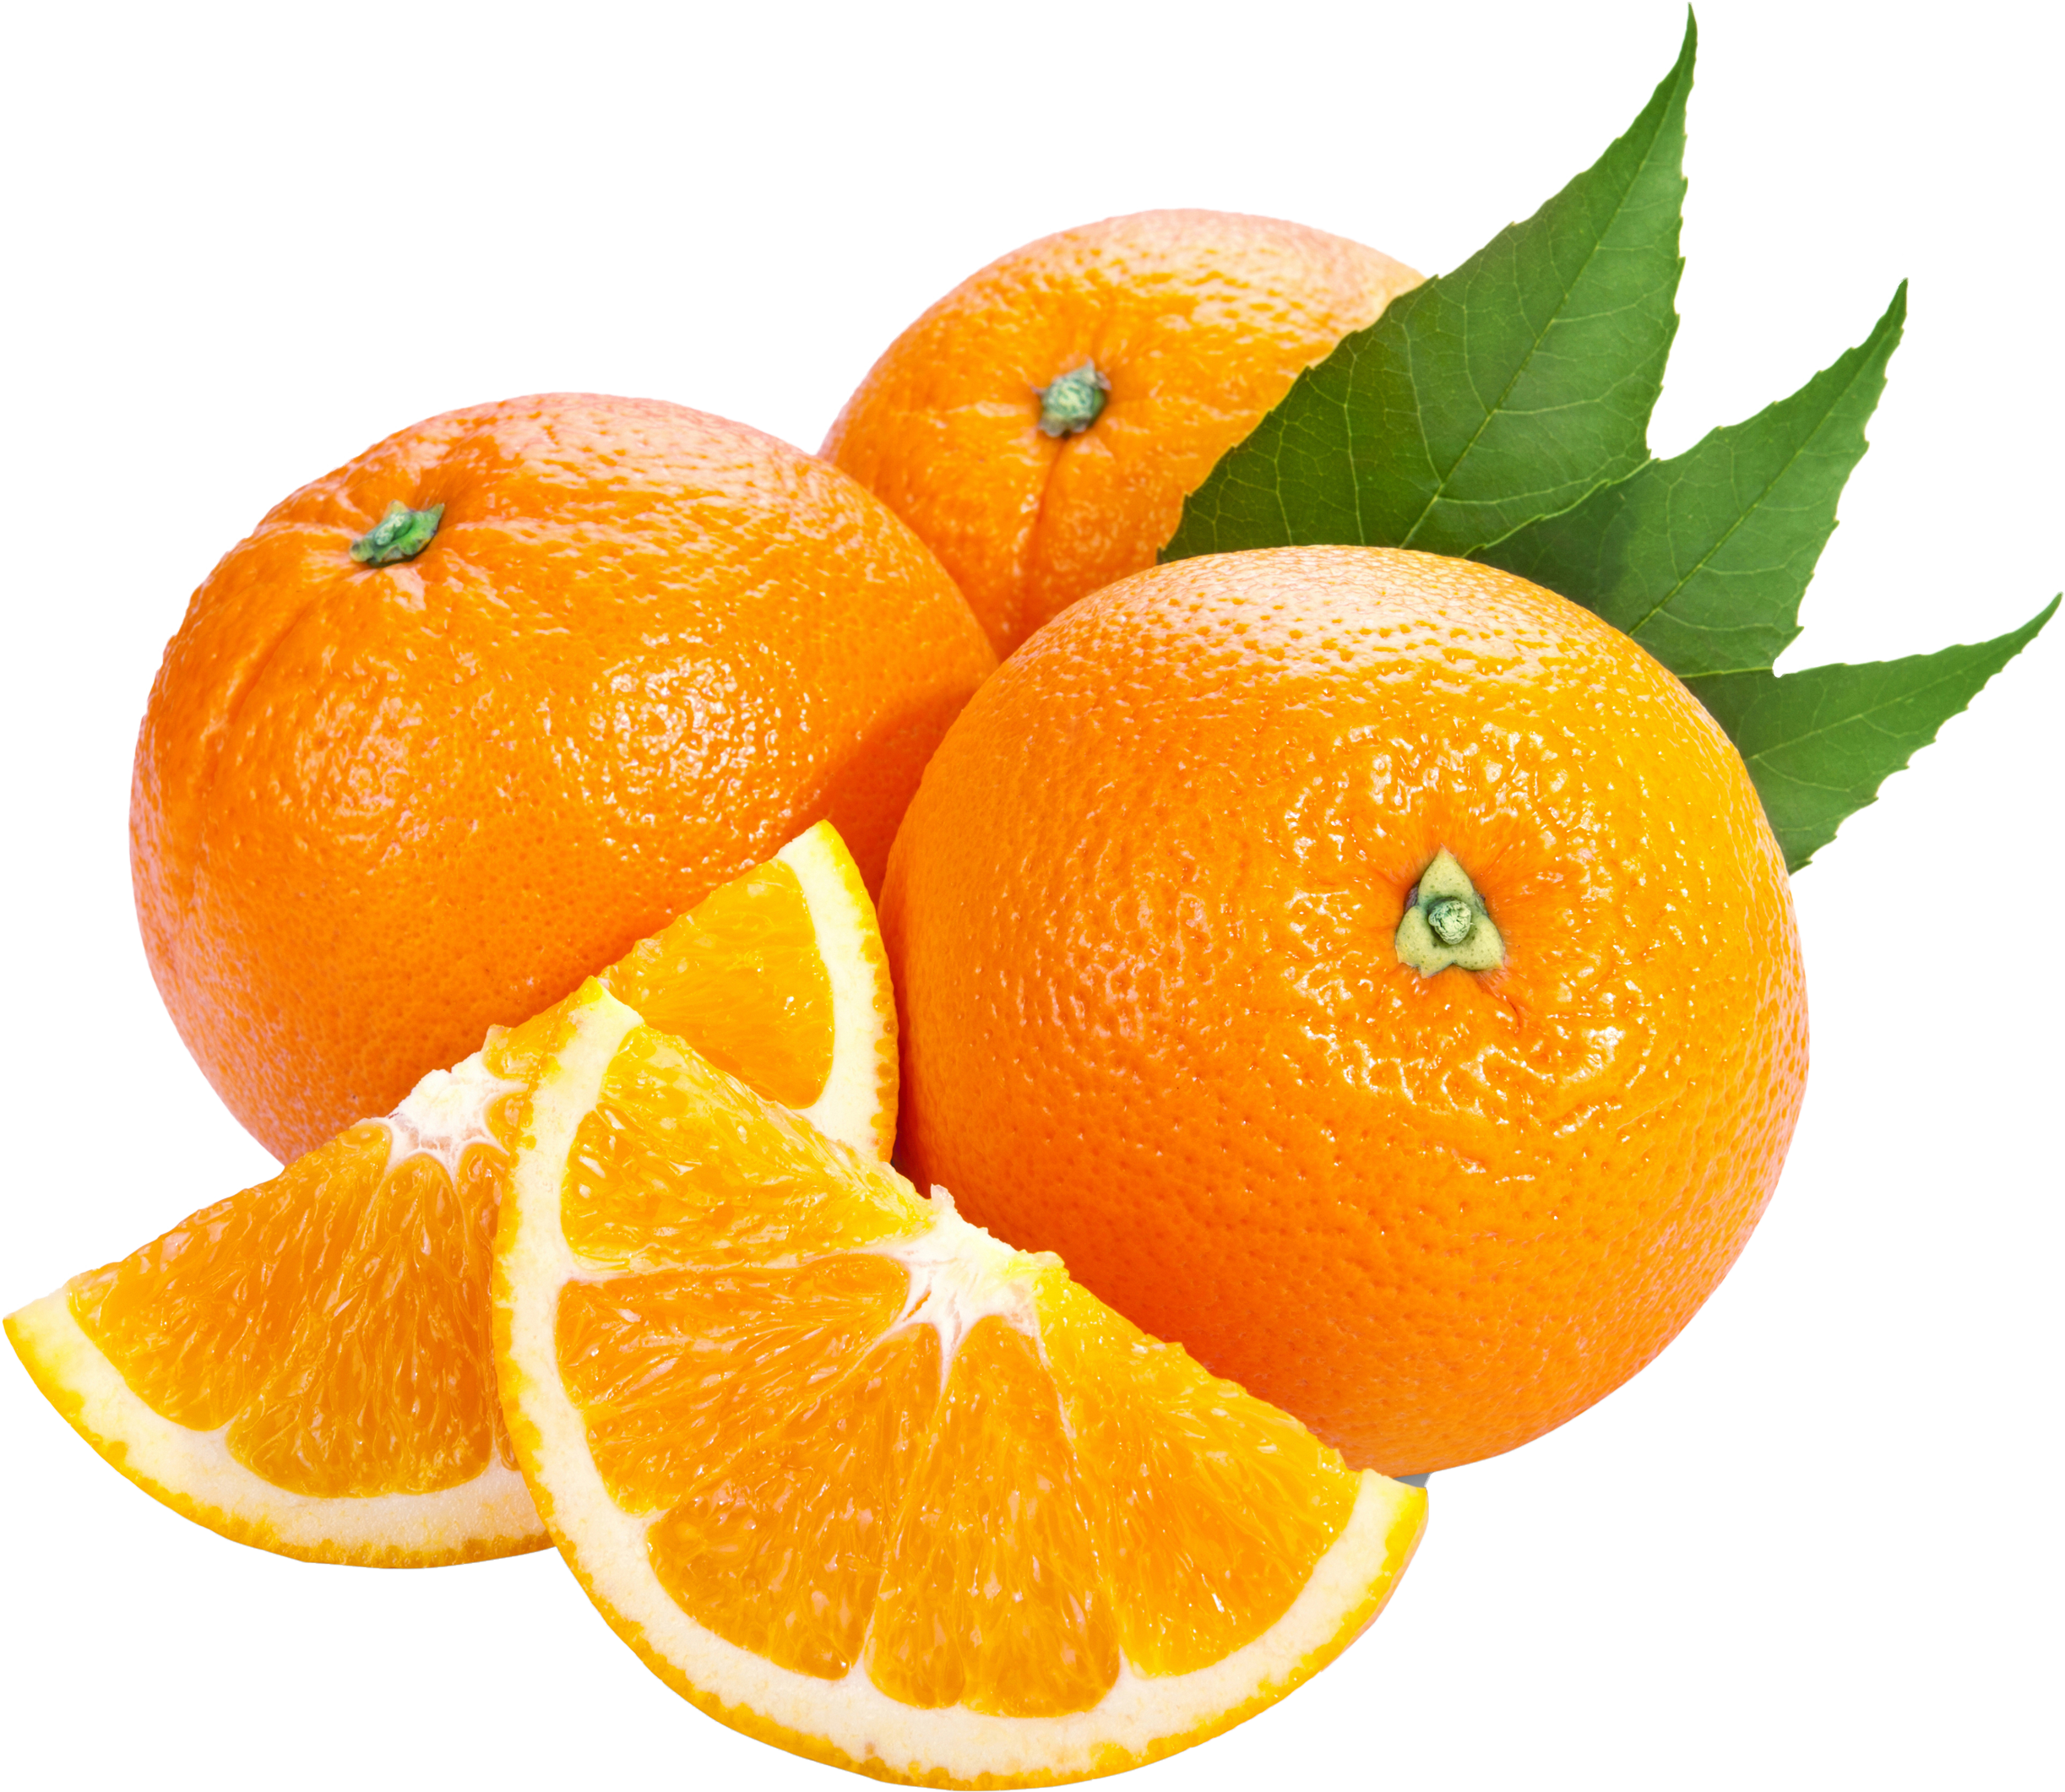 البرتقال لمحاربة الإصابة

بسرطان الرئة الناتج عن التدخين